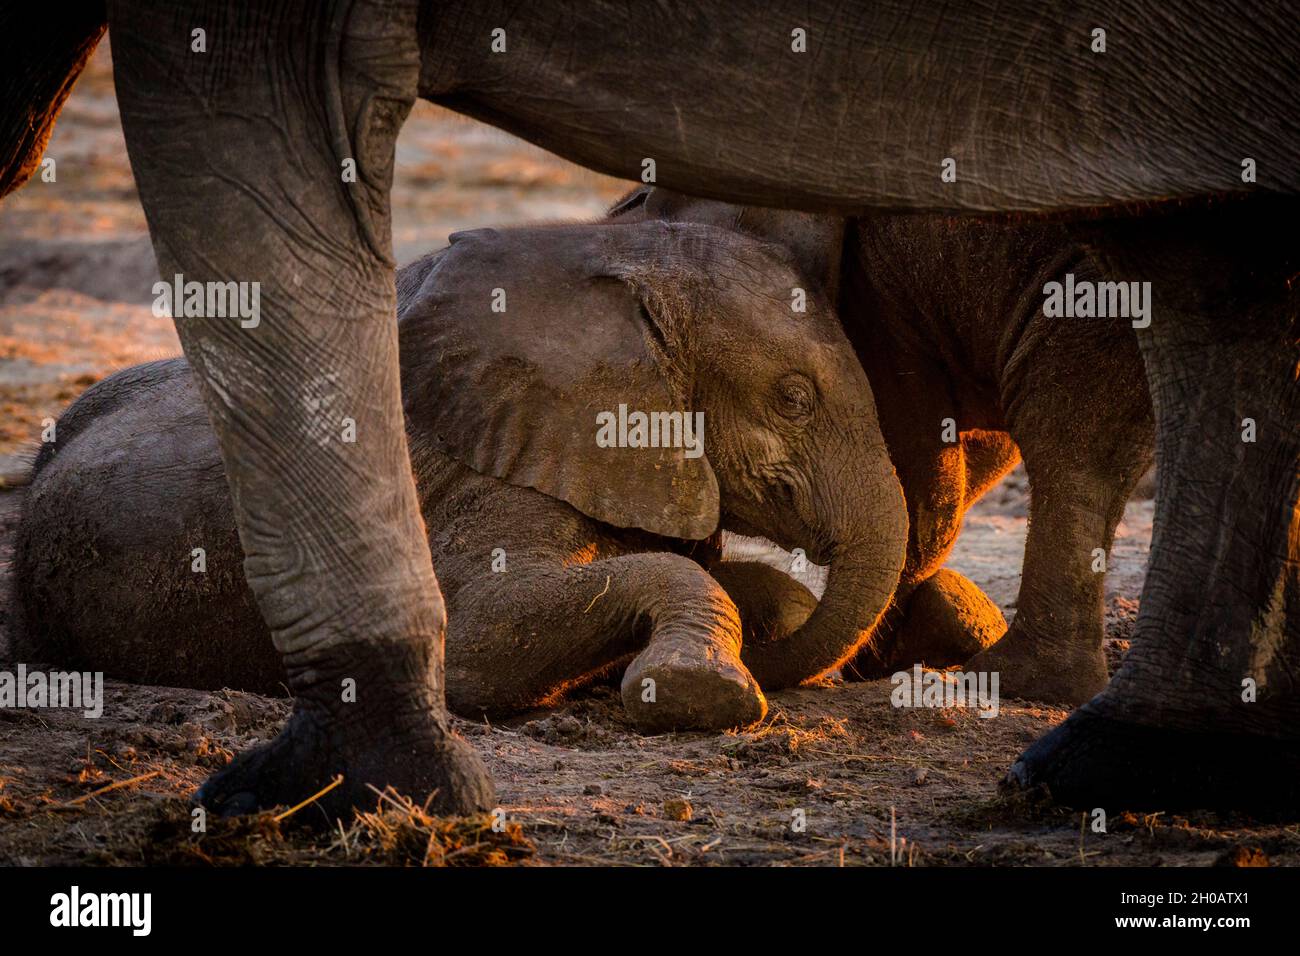 African bush elephant or African elephant (Loxodonta africana) juveniles playing. Chobe National Park. Botswana Stock Photo